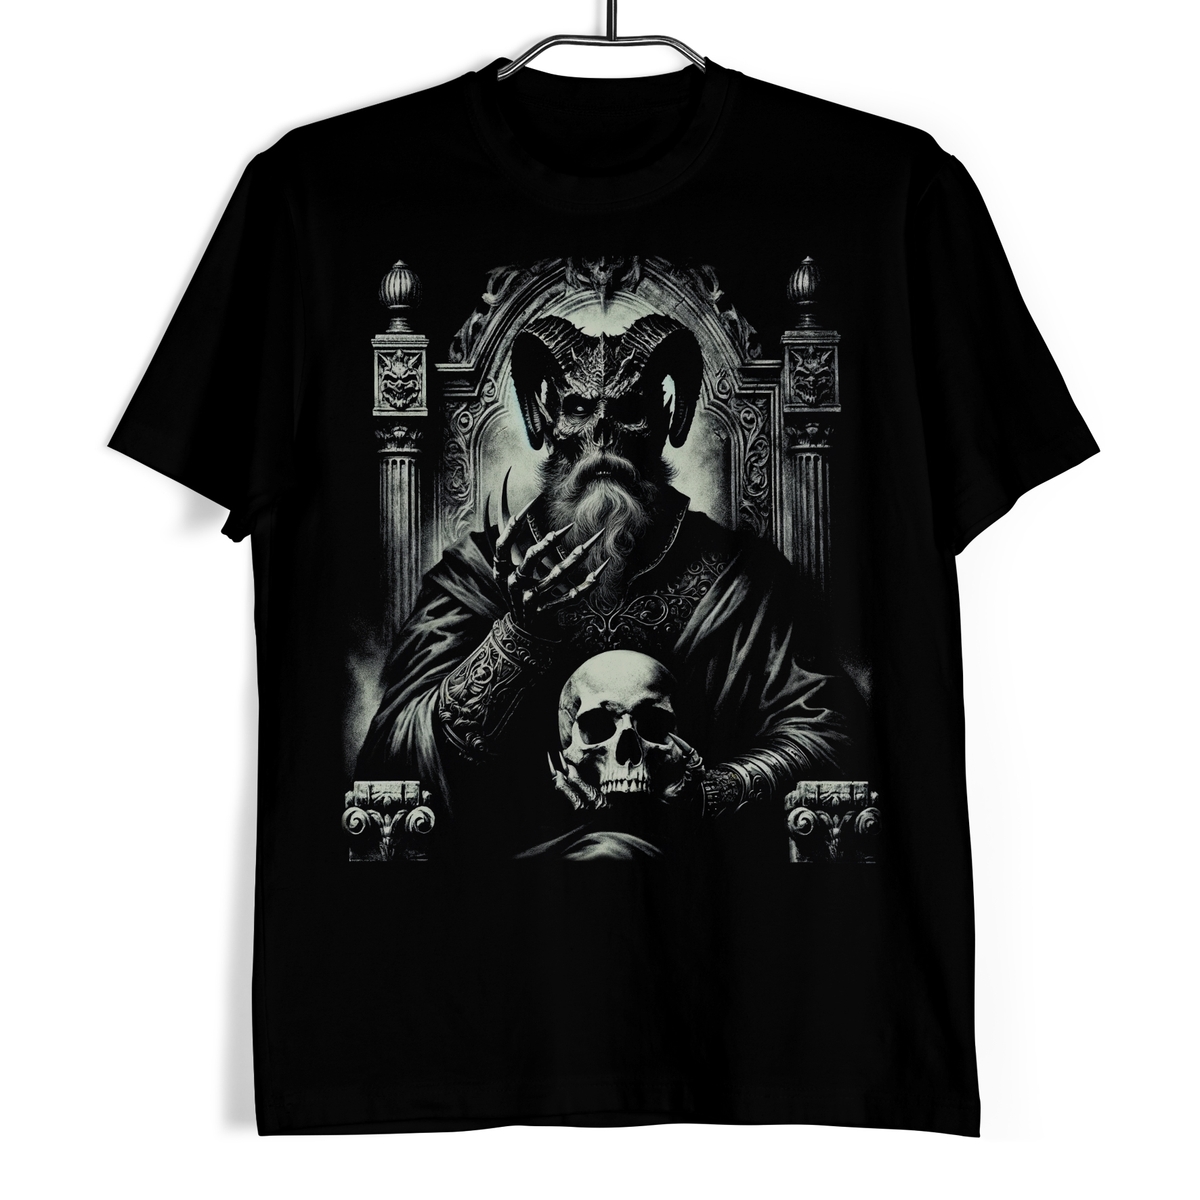 Tričko s lebkou - Vládce temného trůnu 3XL